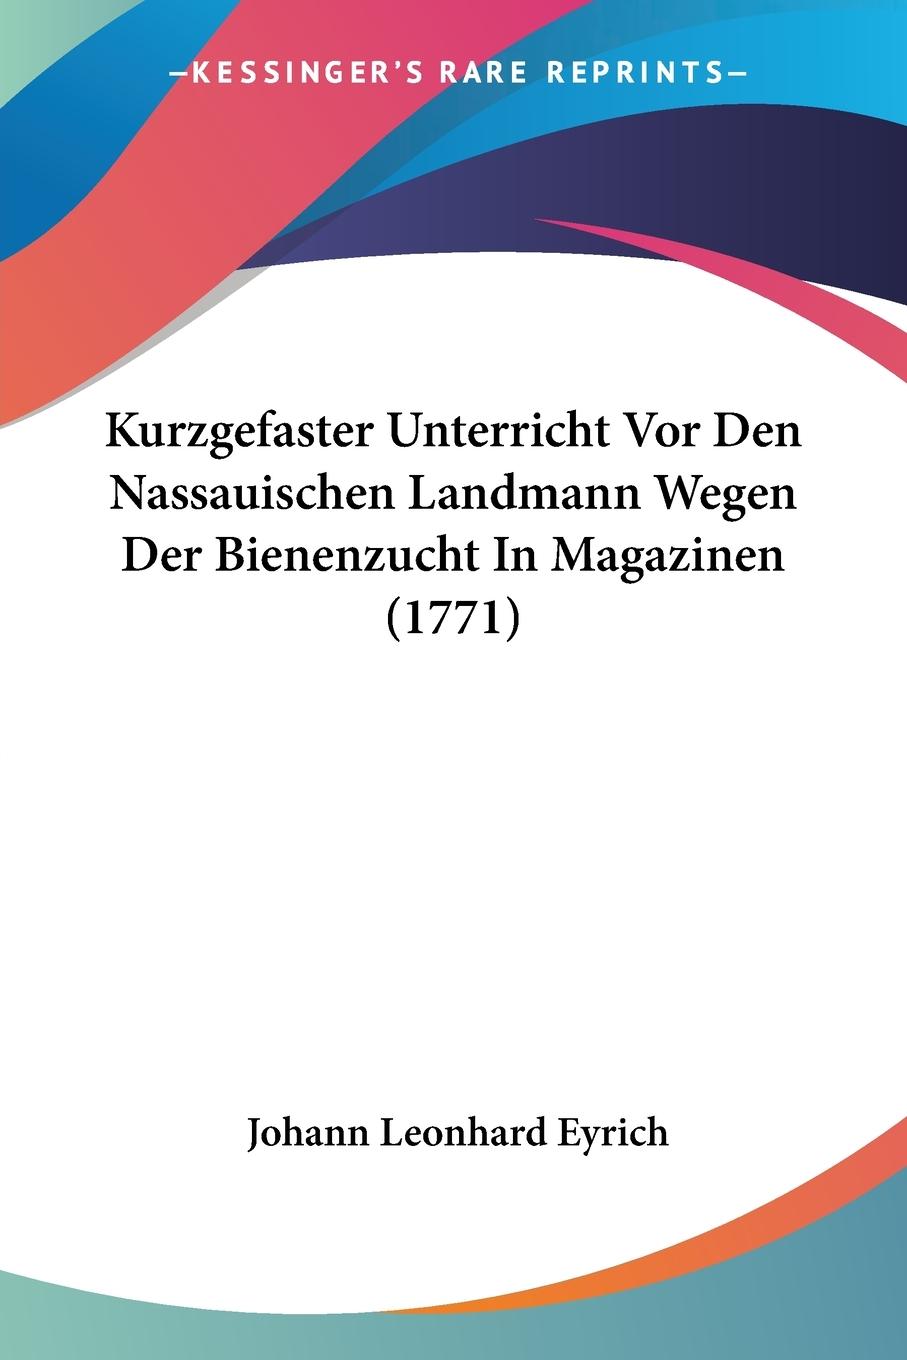 Kurzgefaster Unterricht Vor Den Nassauischen Landmann Wegen Der Bienenzucht In Magazinen (1771) - Eyrich, Johann Leonhard